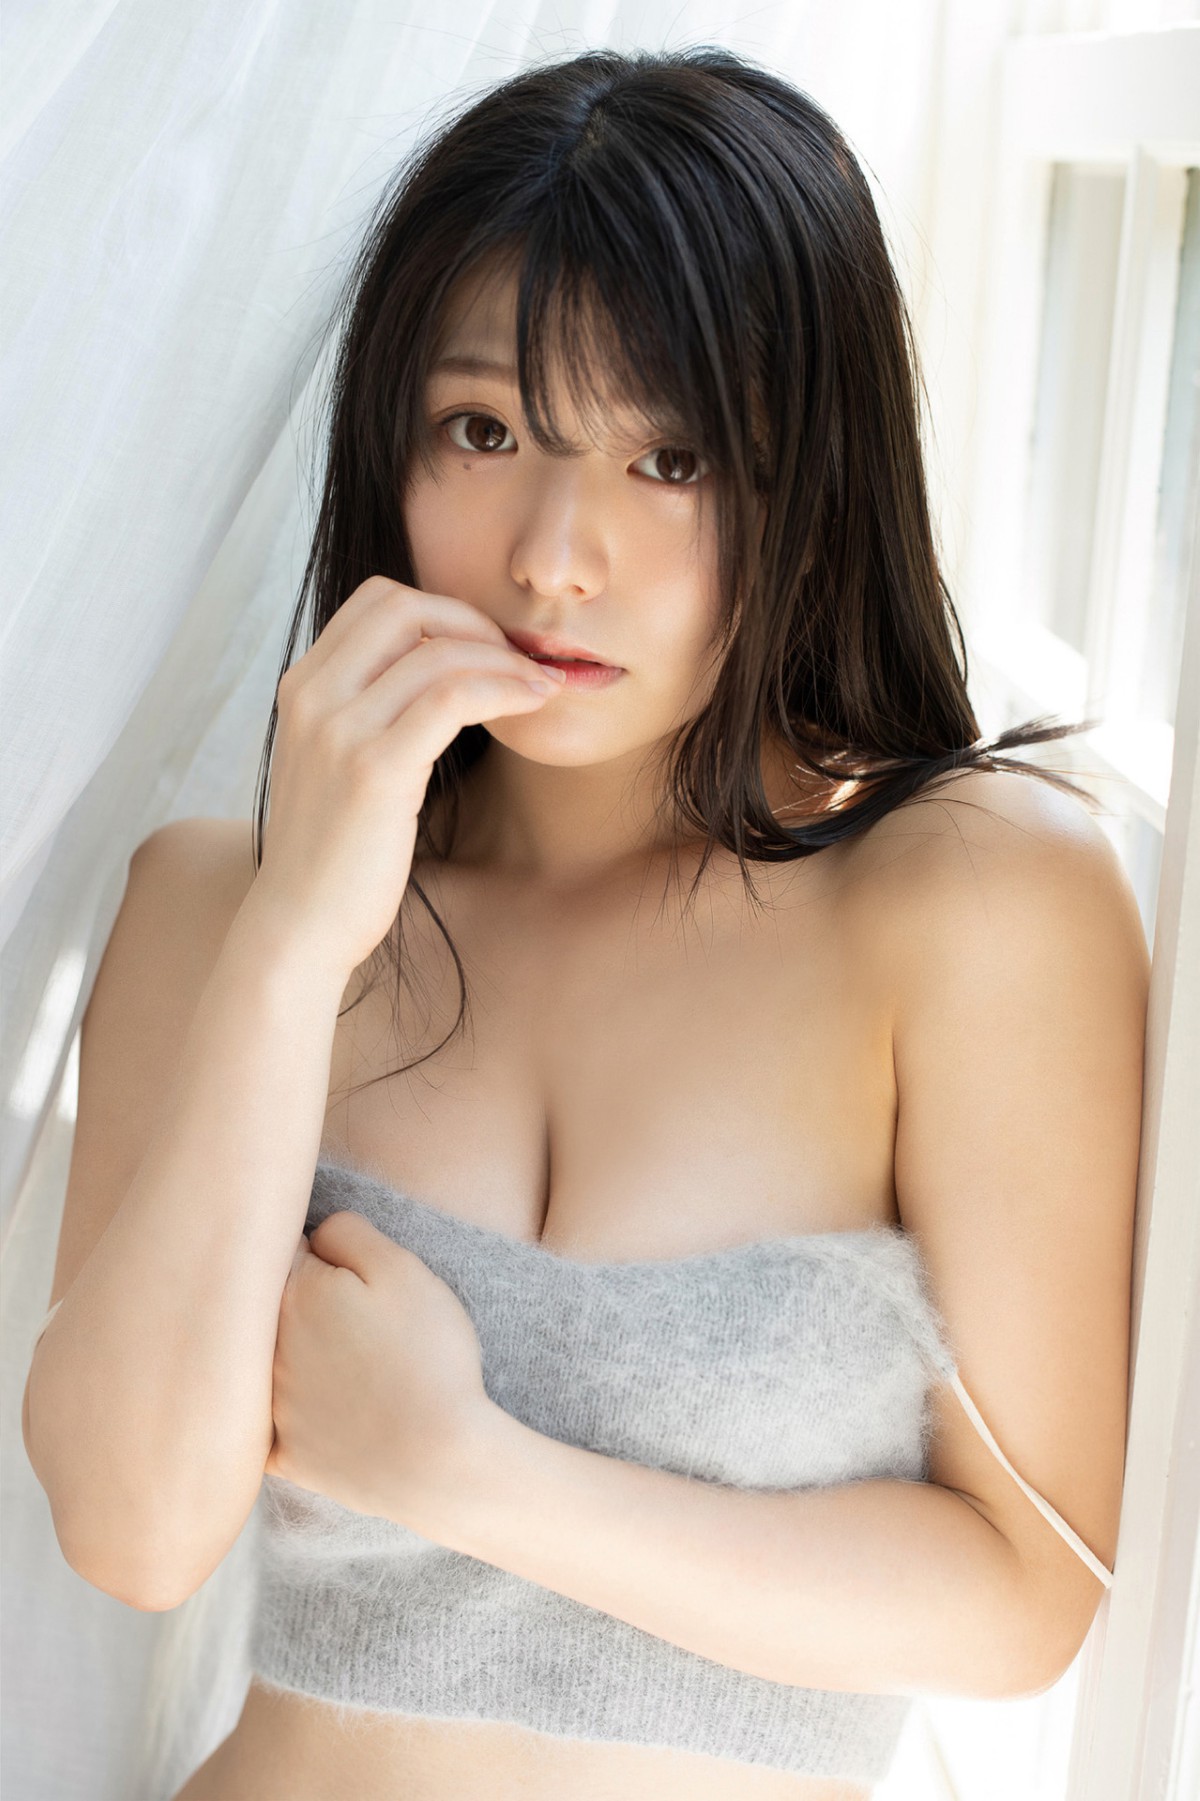 Weekly Gendai Photobook Yamada Kana 山田かな KANA Sensual White No Watermark 0029 2166604581.jpg